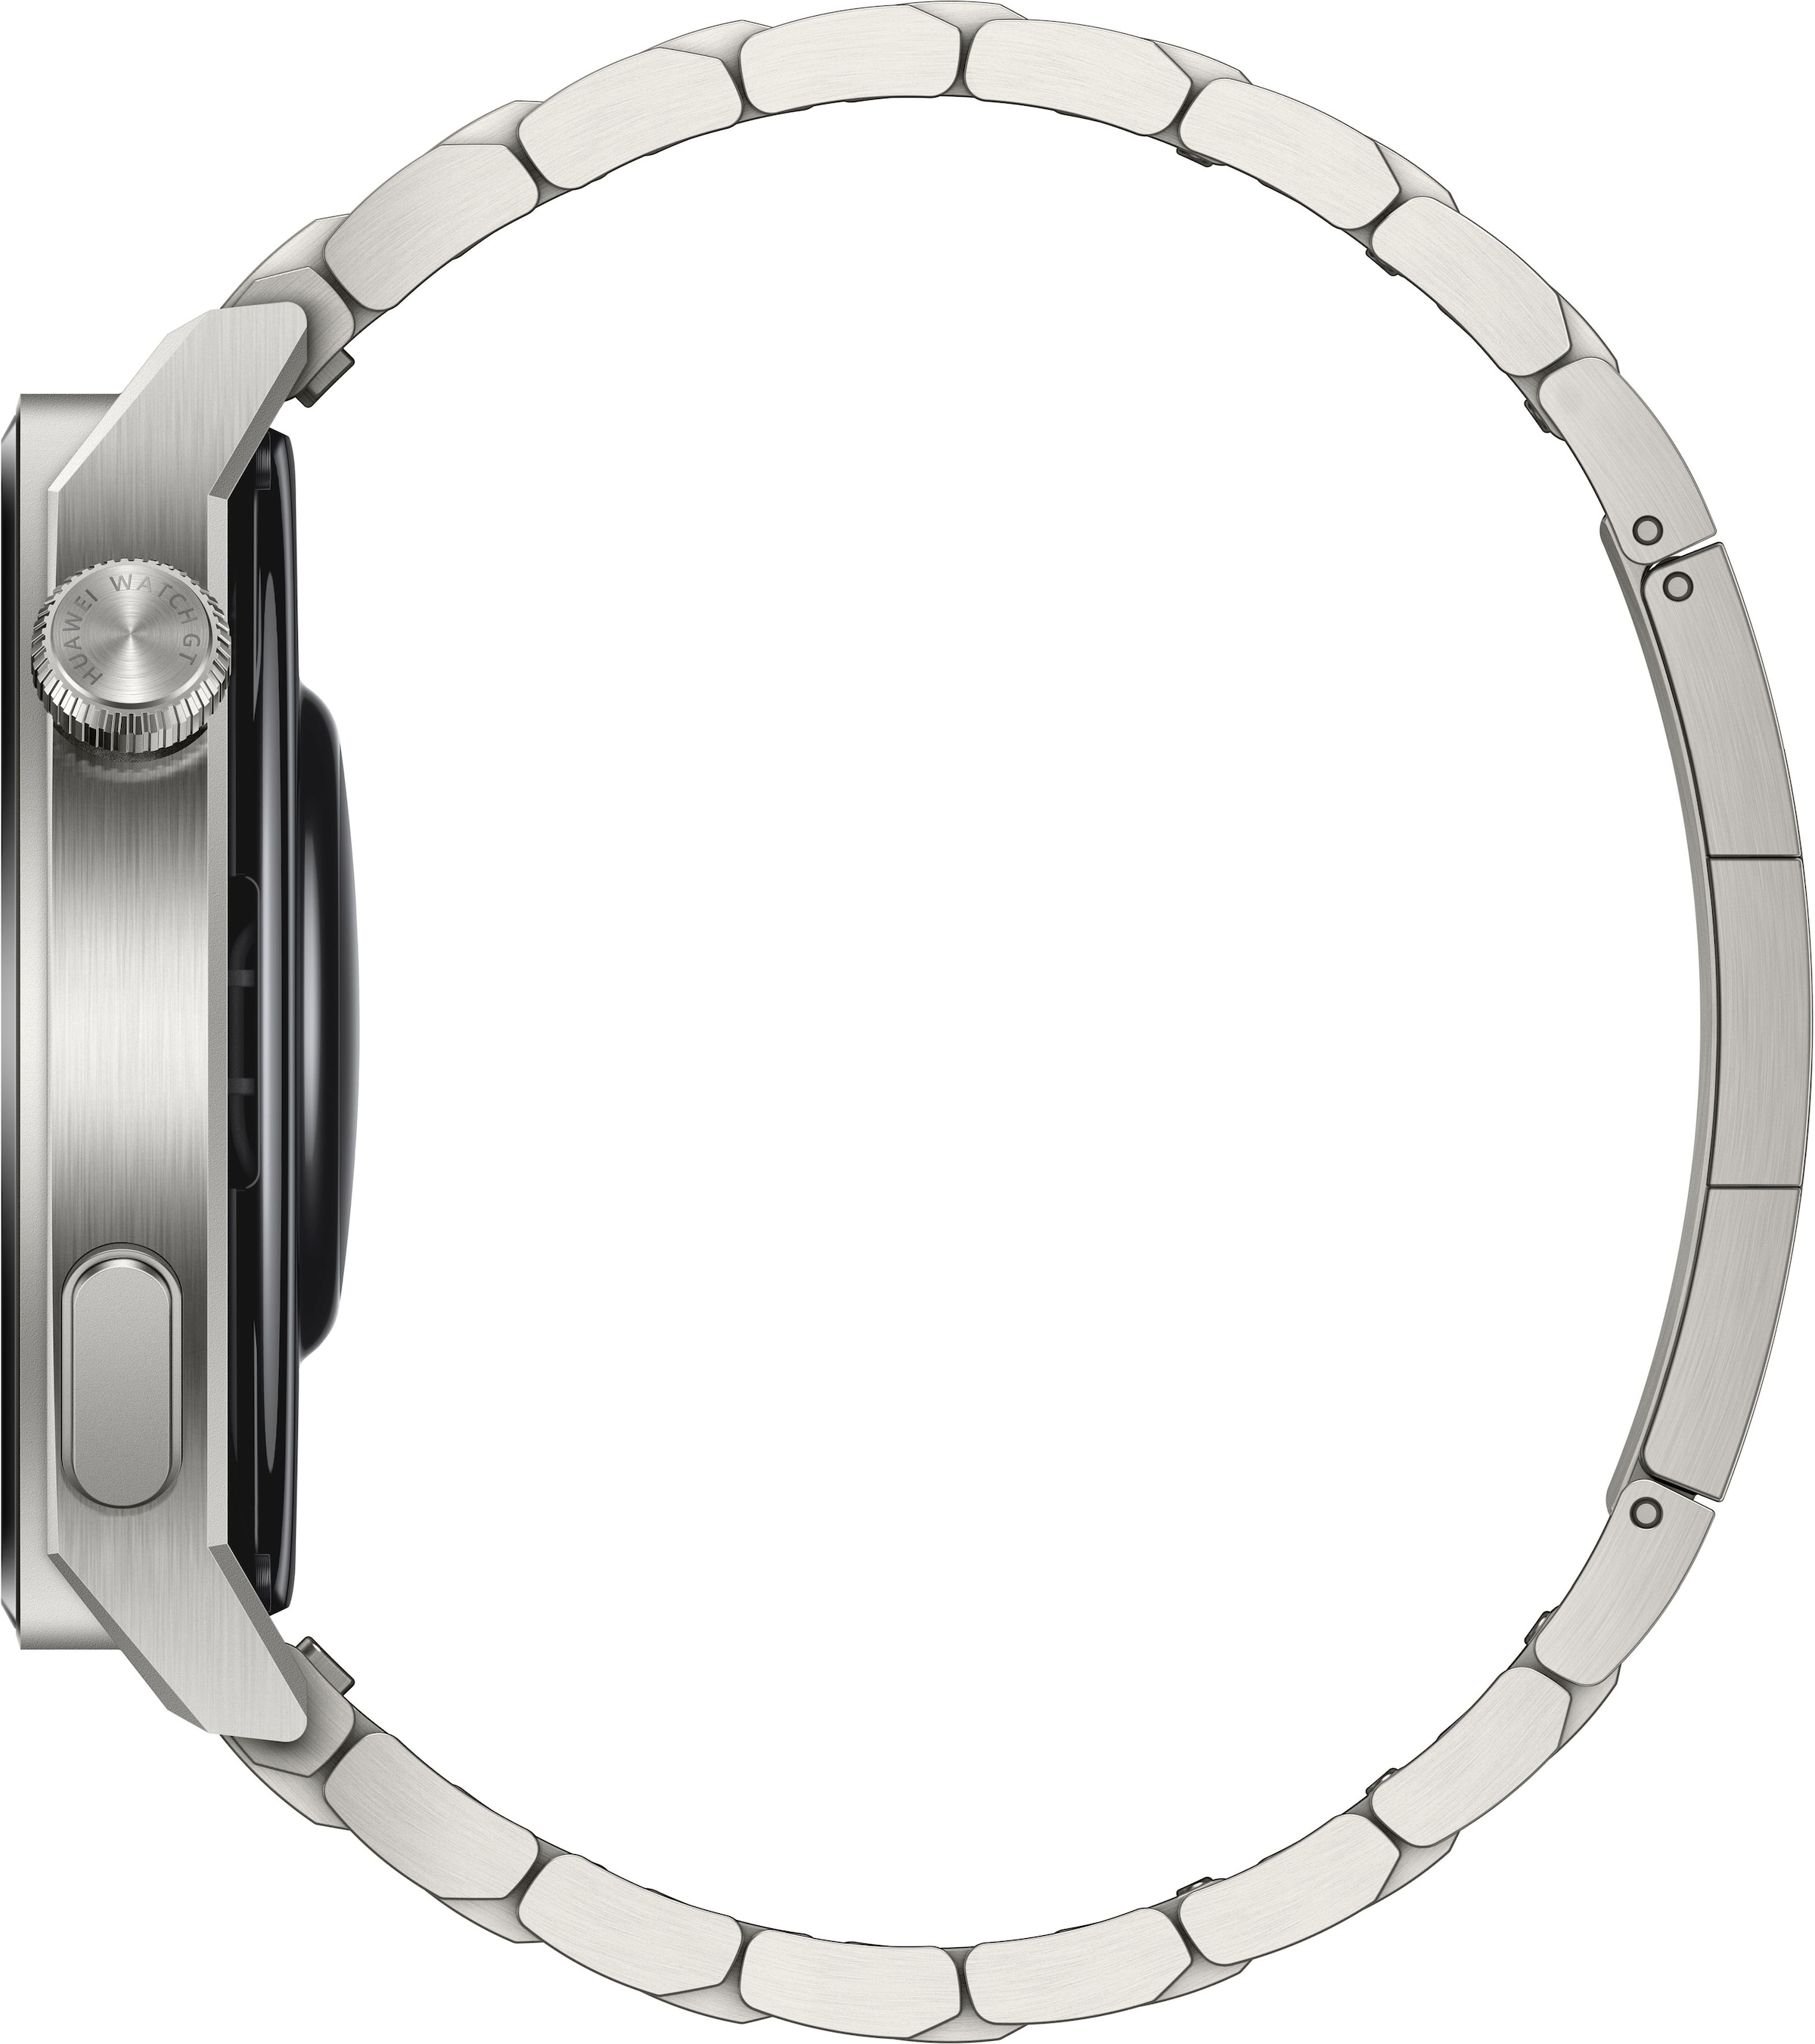 Huawei Smartwatch »Watch GT3 Pro 46mm«, (3 Jahre Herstellergarantie)